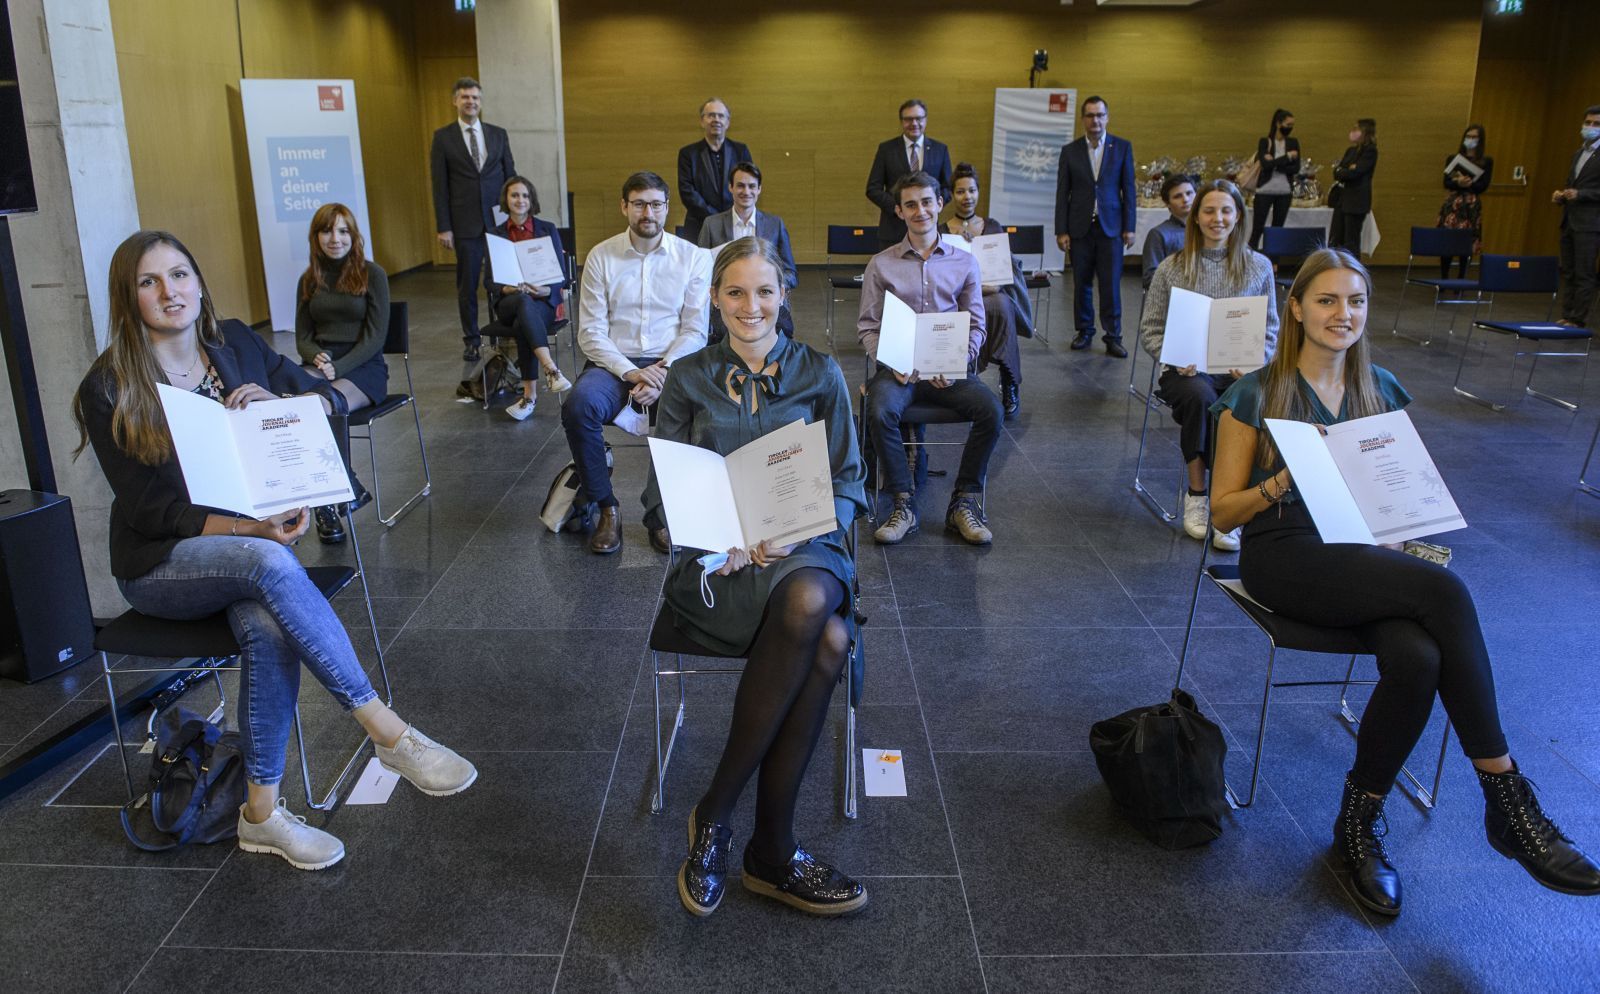 Zertifikate für zwölf Jungjournalist:innen: Lehrgang der Tiroler Journalismusakademie wurde erfolgreich abgeschlossen